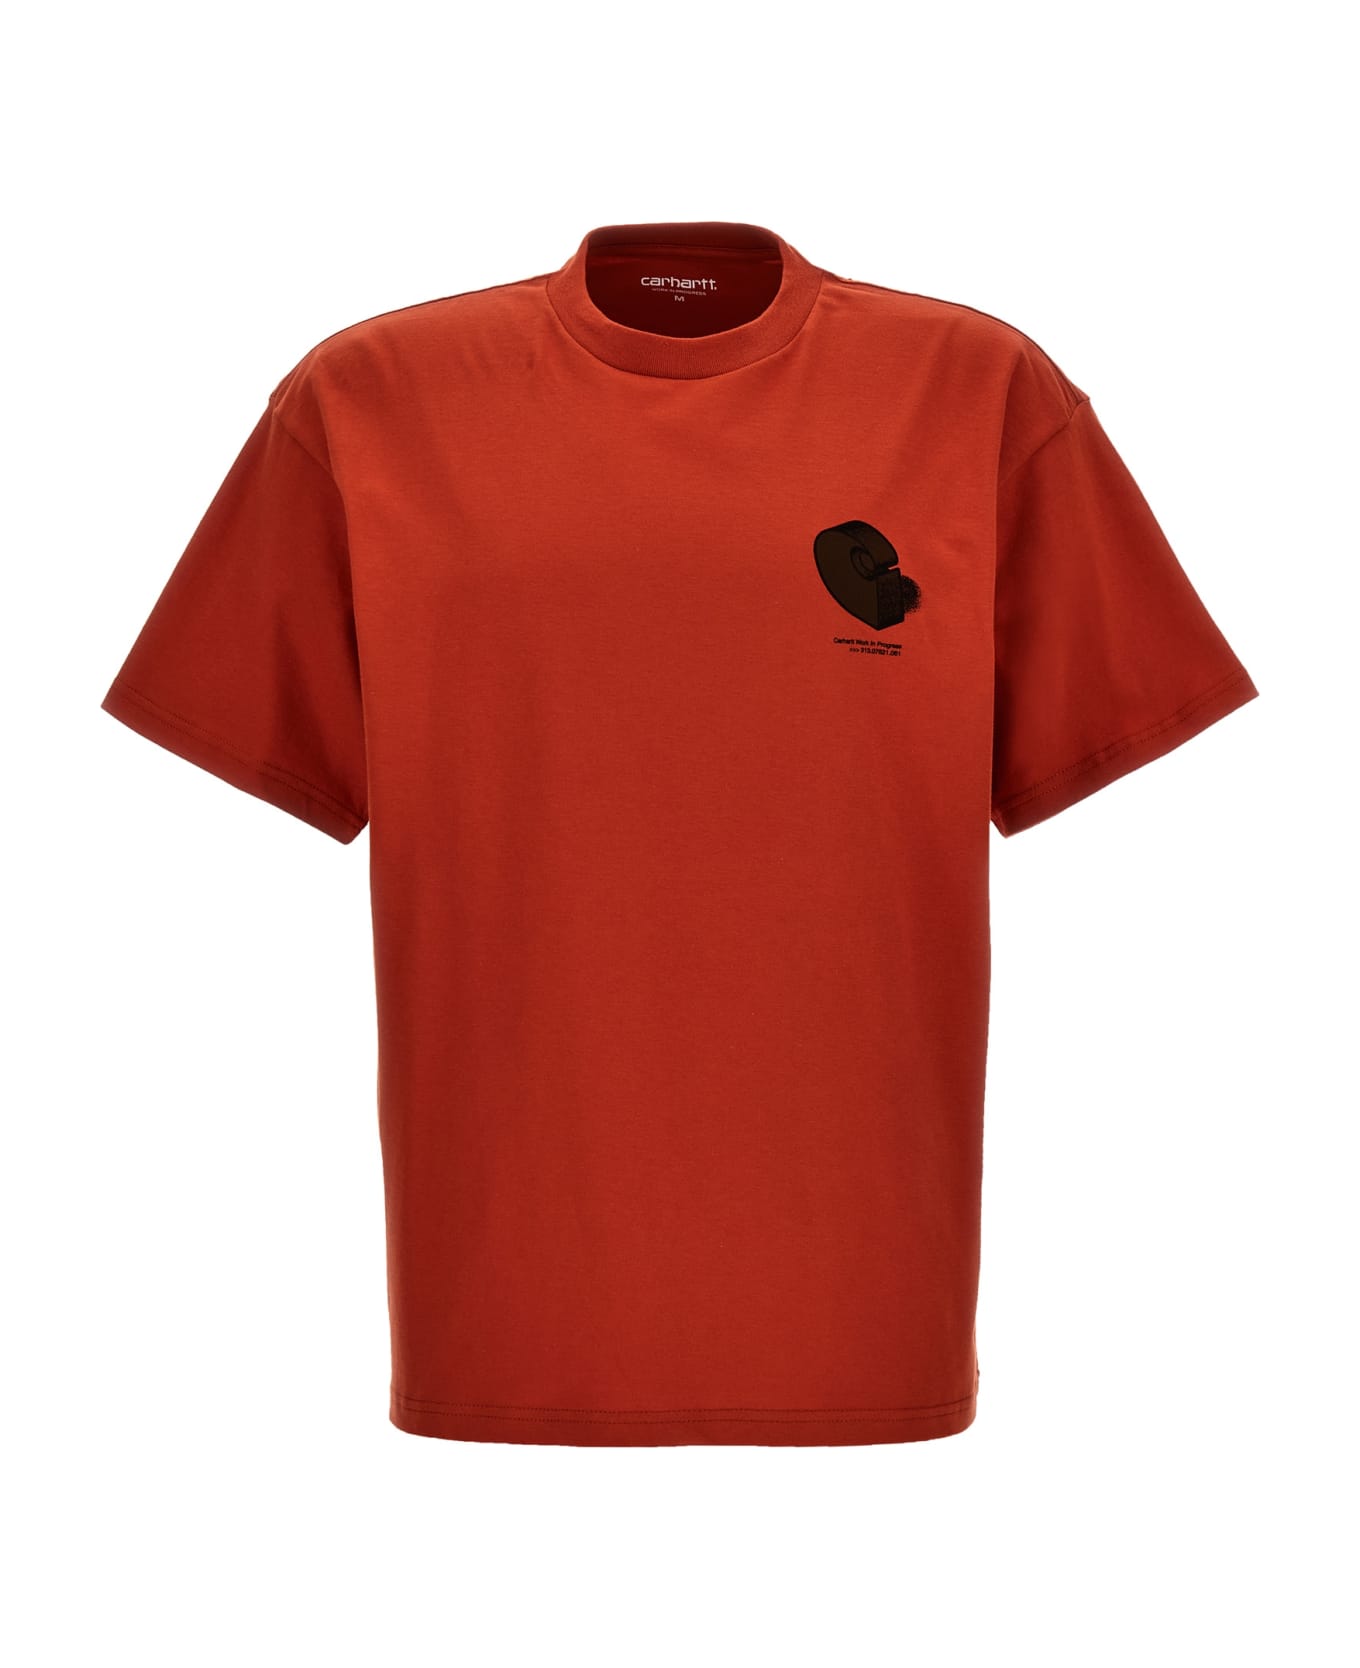 Carhartt WIP 'diagram' T-shirt - Red シャツ